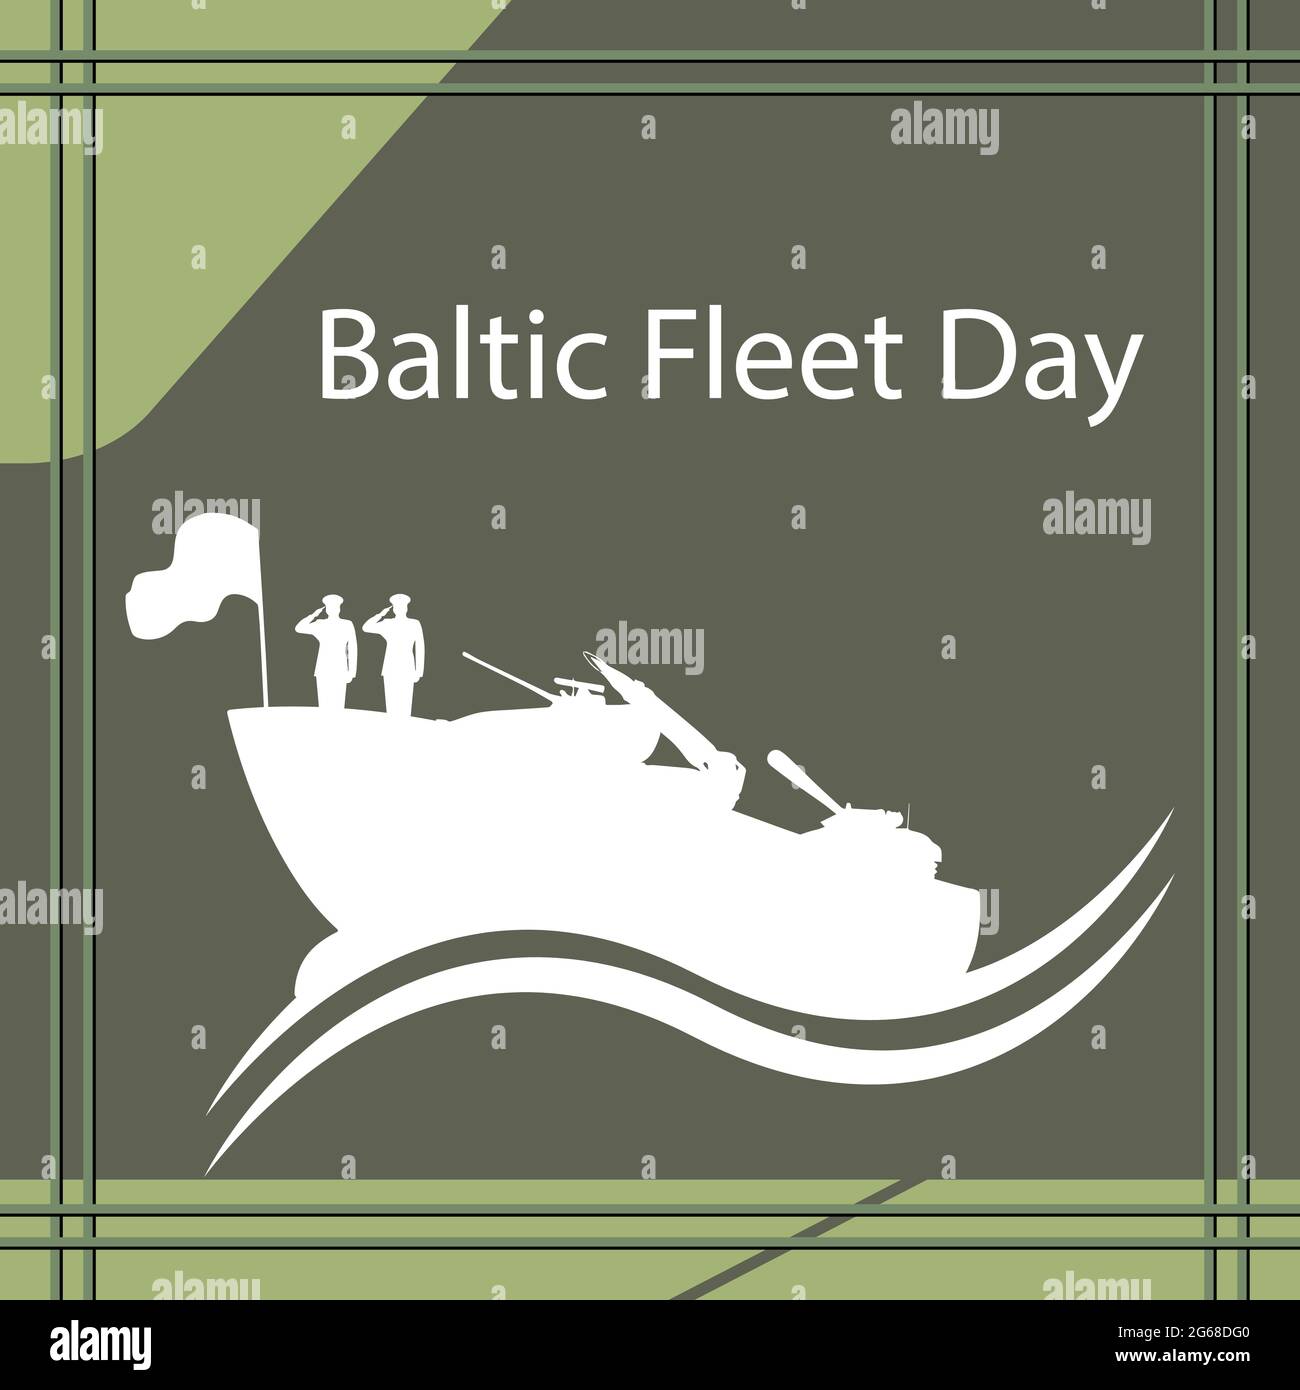 El Día de la Flota del Báltico se celebra anualmente en Rusia el 18 de mayo. Esta fecha fue elegida desde que se estableció la Flota del Báltico el 18 de mayo de 1703. Ilustración del Vector